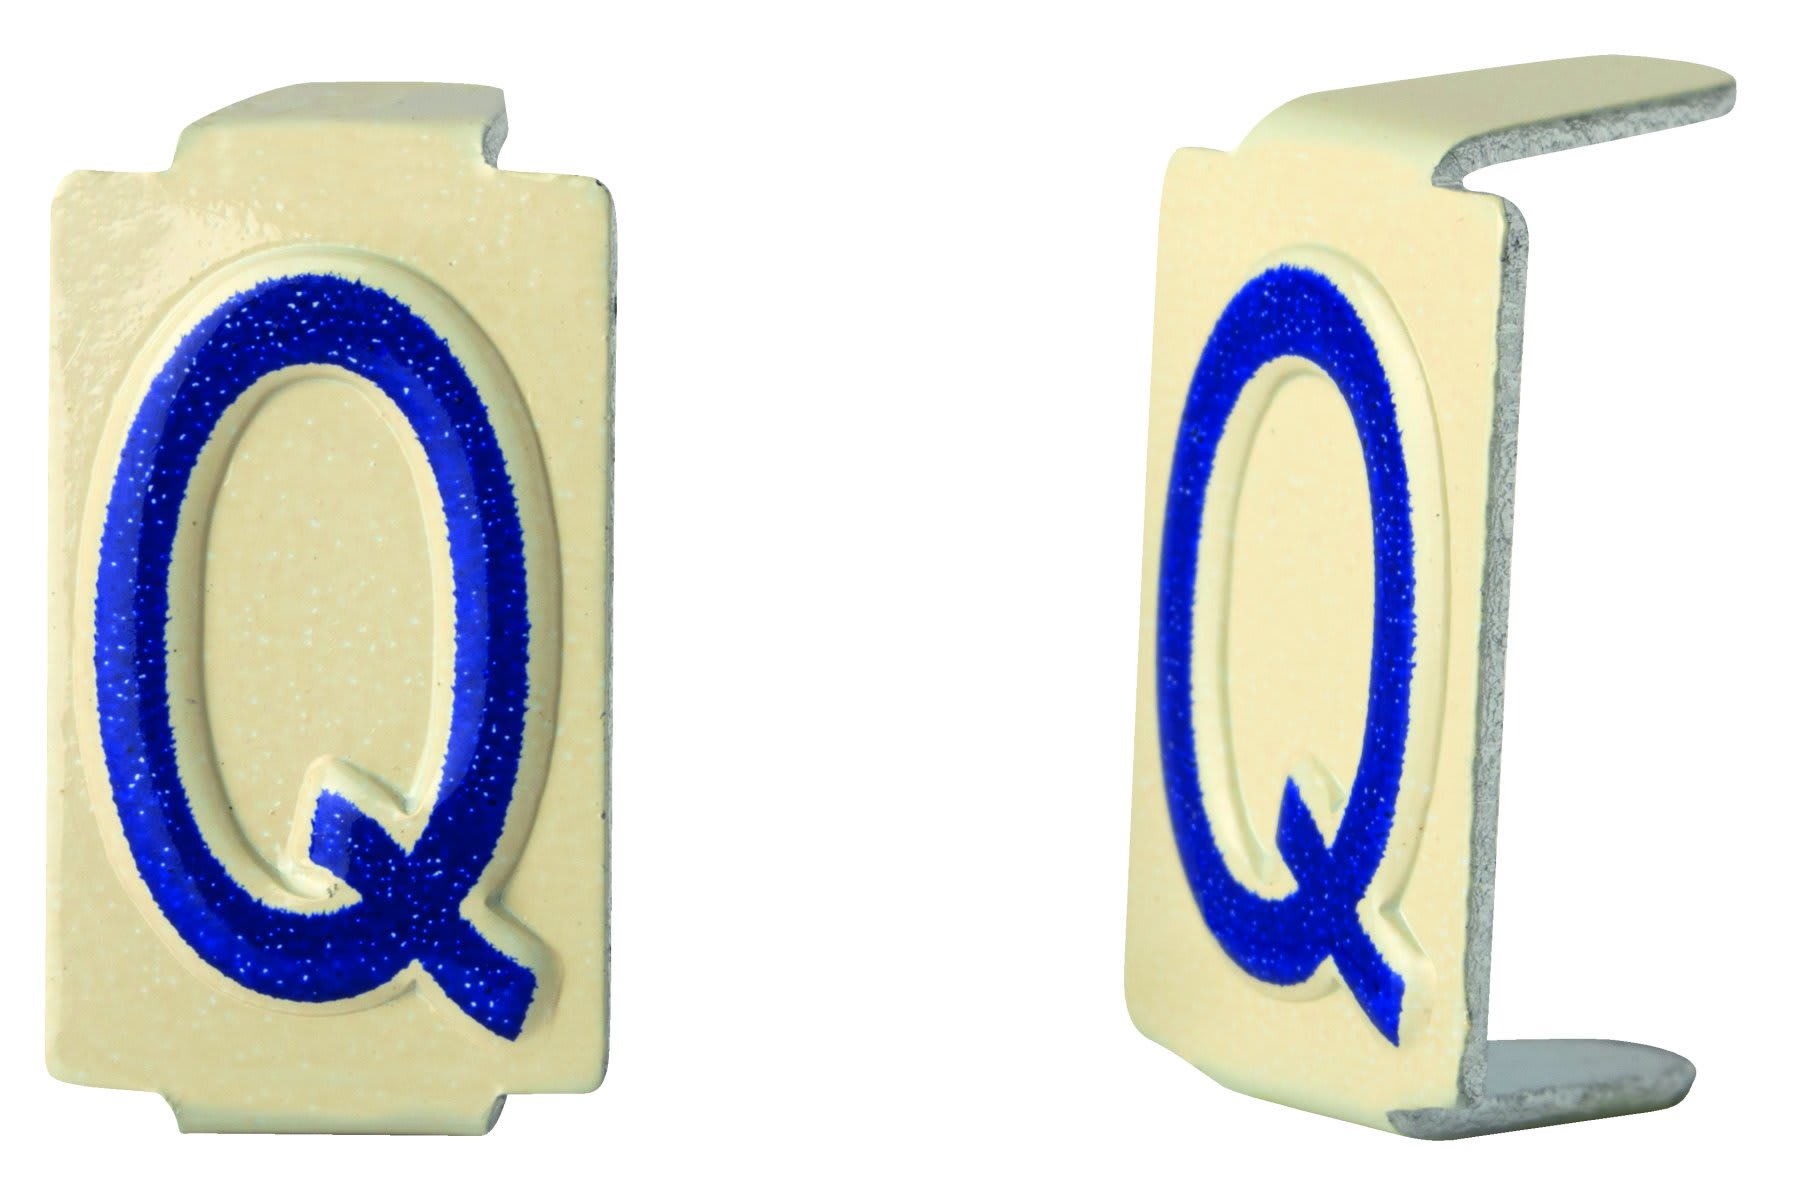 Seifel - Caractere amovible 6x11 lettre Q - conditionnement par sachet de 25 unites